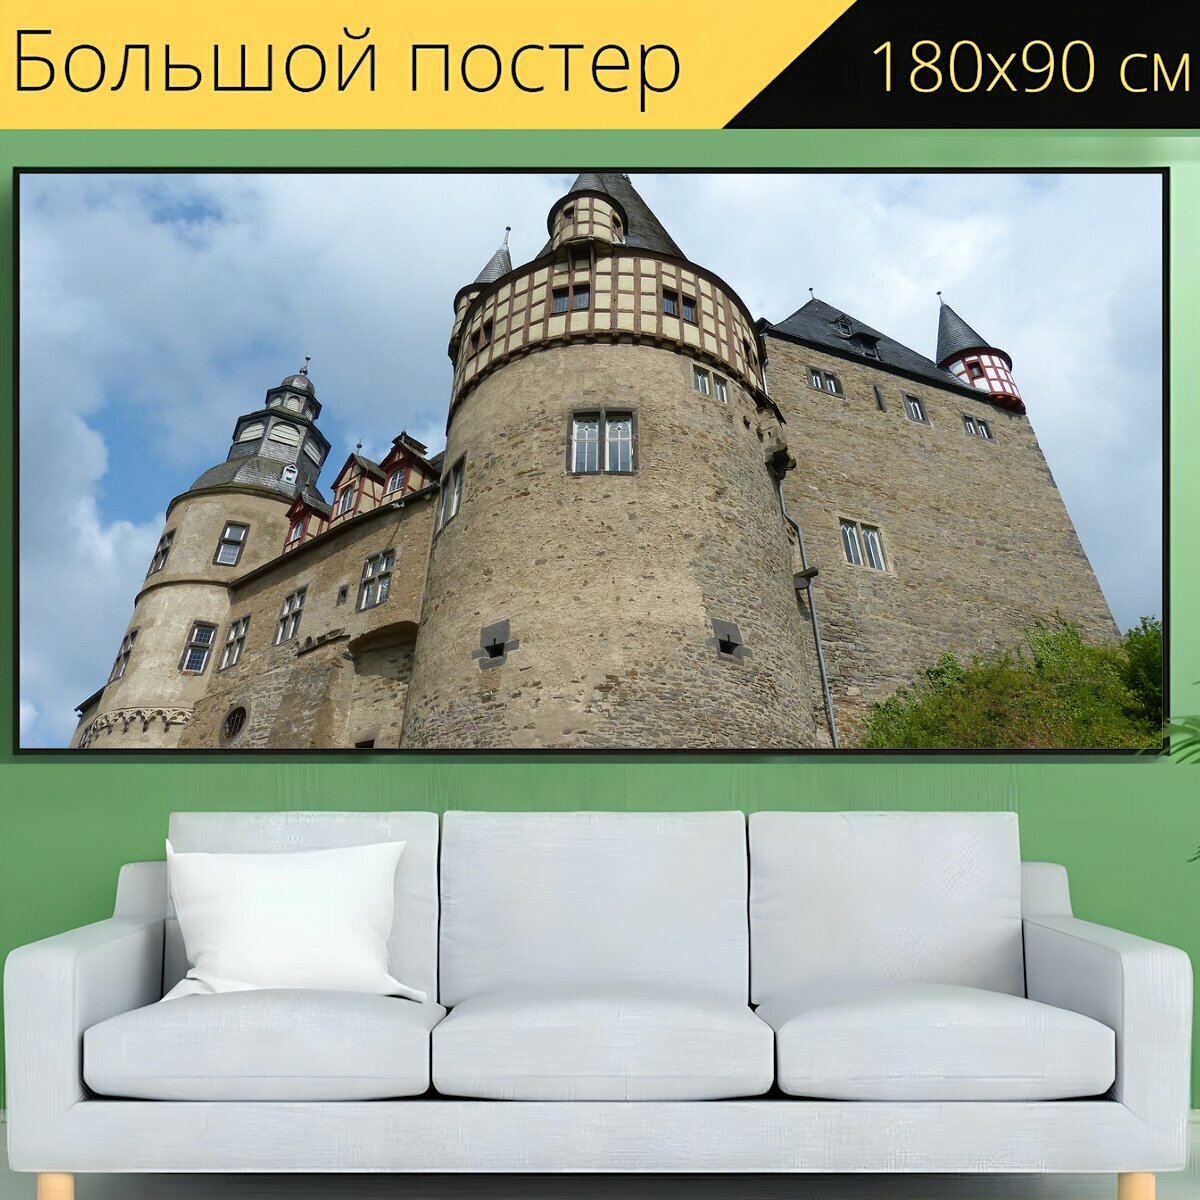 Большой постер "Замок, мозель, архитектура" 180 x 90 см. для интерьера